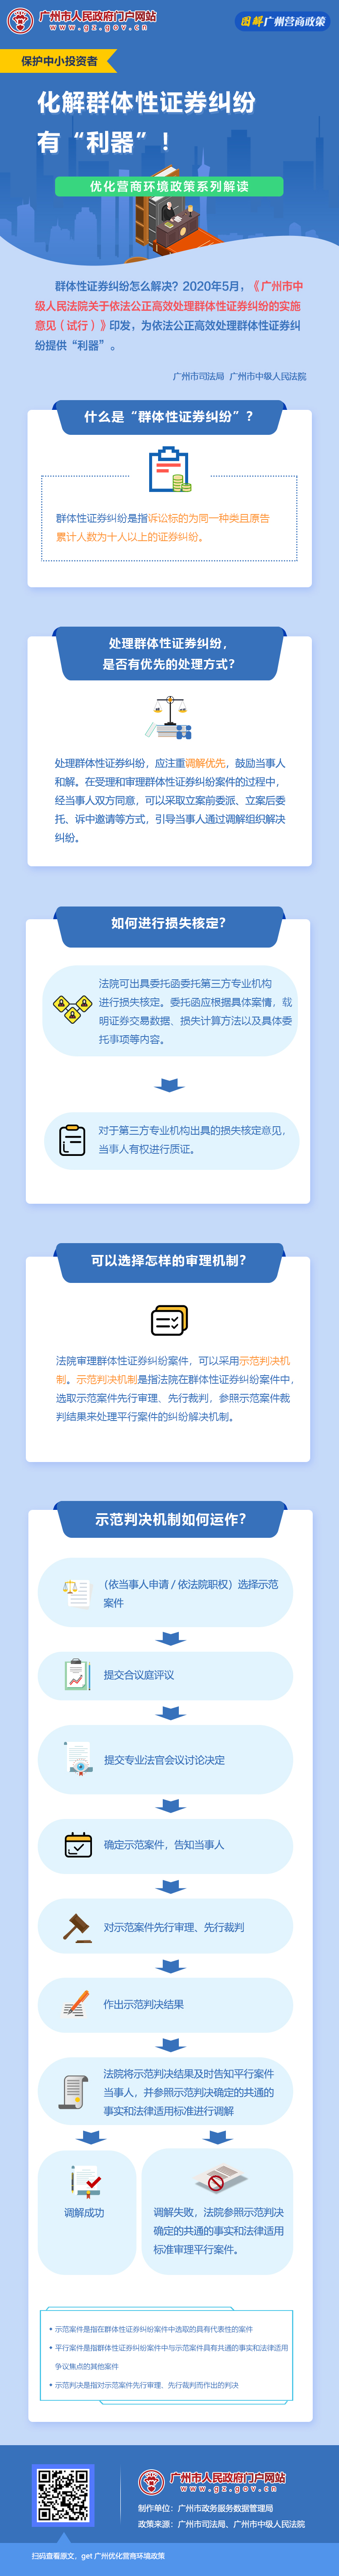 14广州市中级人民法院关于依法公正高效处理群体性证券纠纷的实施意见（试行）.jpg